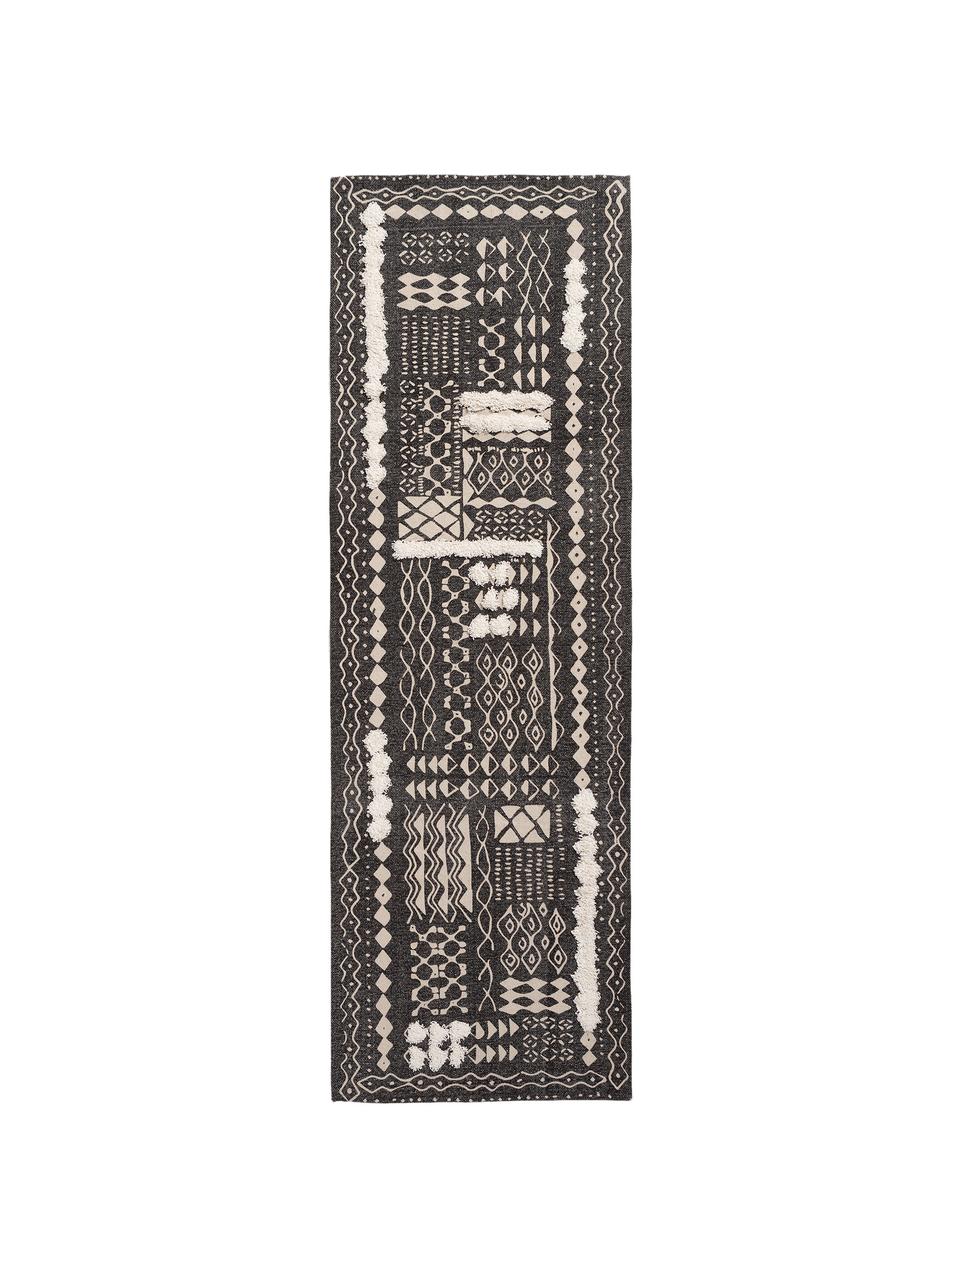 Tappeto boho in cotone con motivo a rilievo nero/bianco Boa, 100% cotone, Nero, bianco, Larg. 60 x Lung. 190 cm